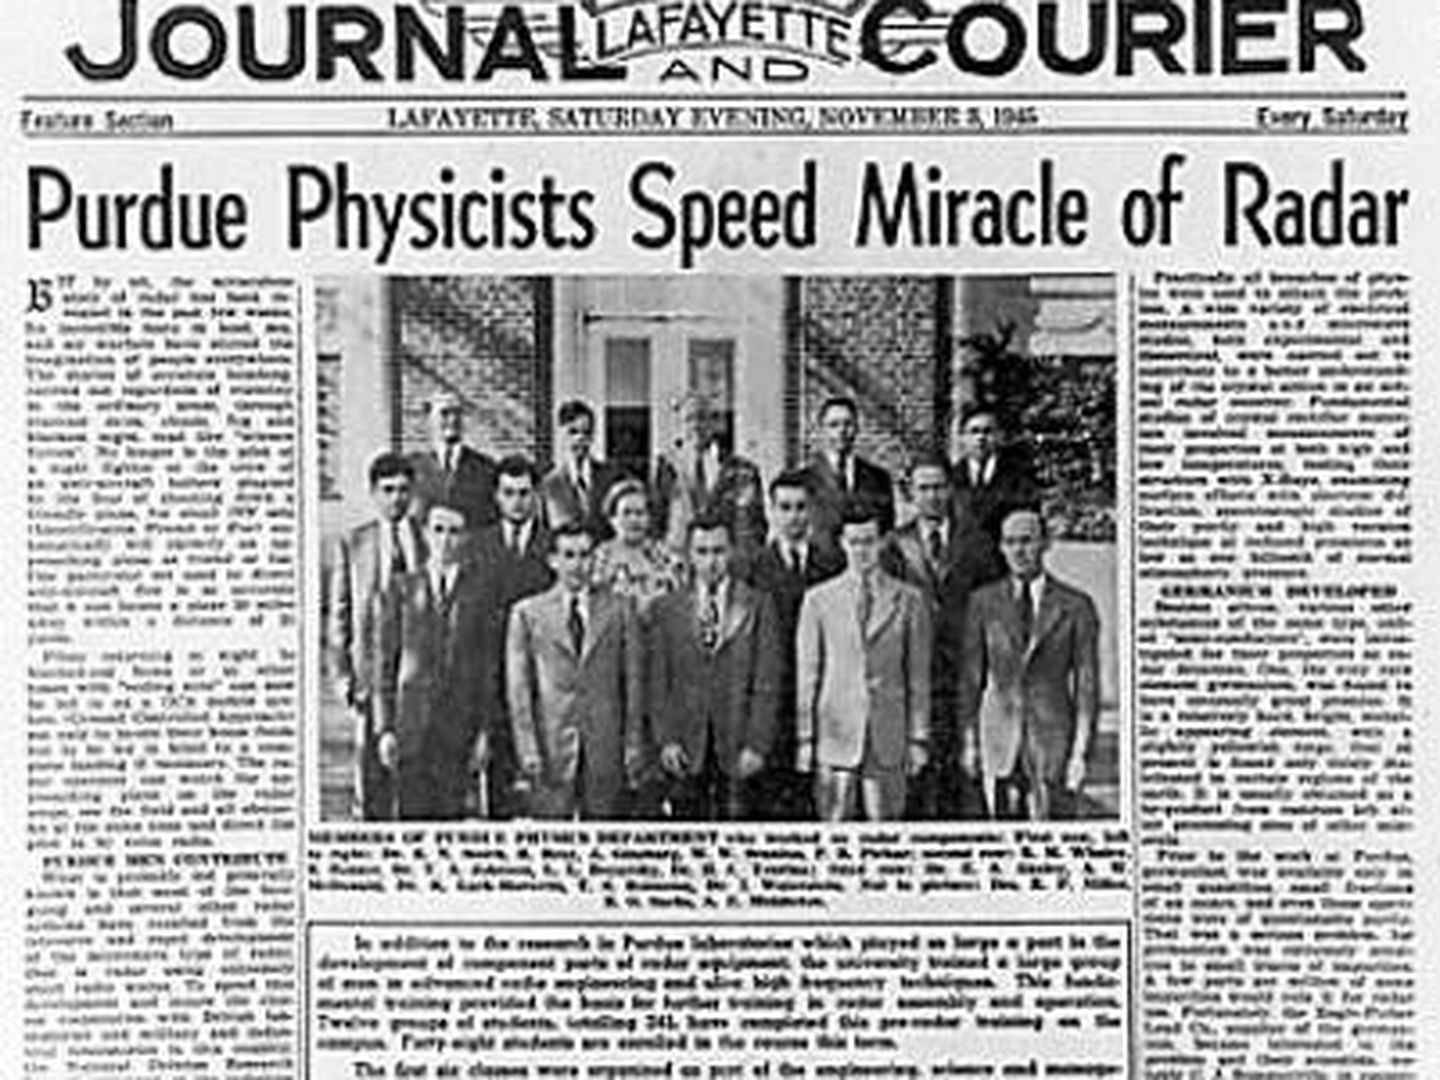 El 'Lafayette Journal and Courier' del 3 de noviembre de 1945 rinde homenaje al desarrollo del radar llevado a cabo en


la Universidad de Purdue (Ralph Bray)